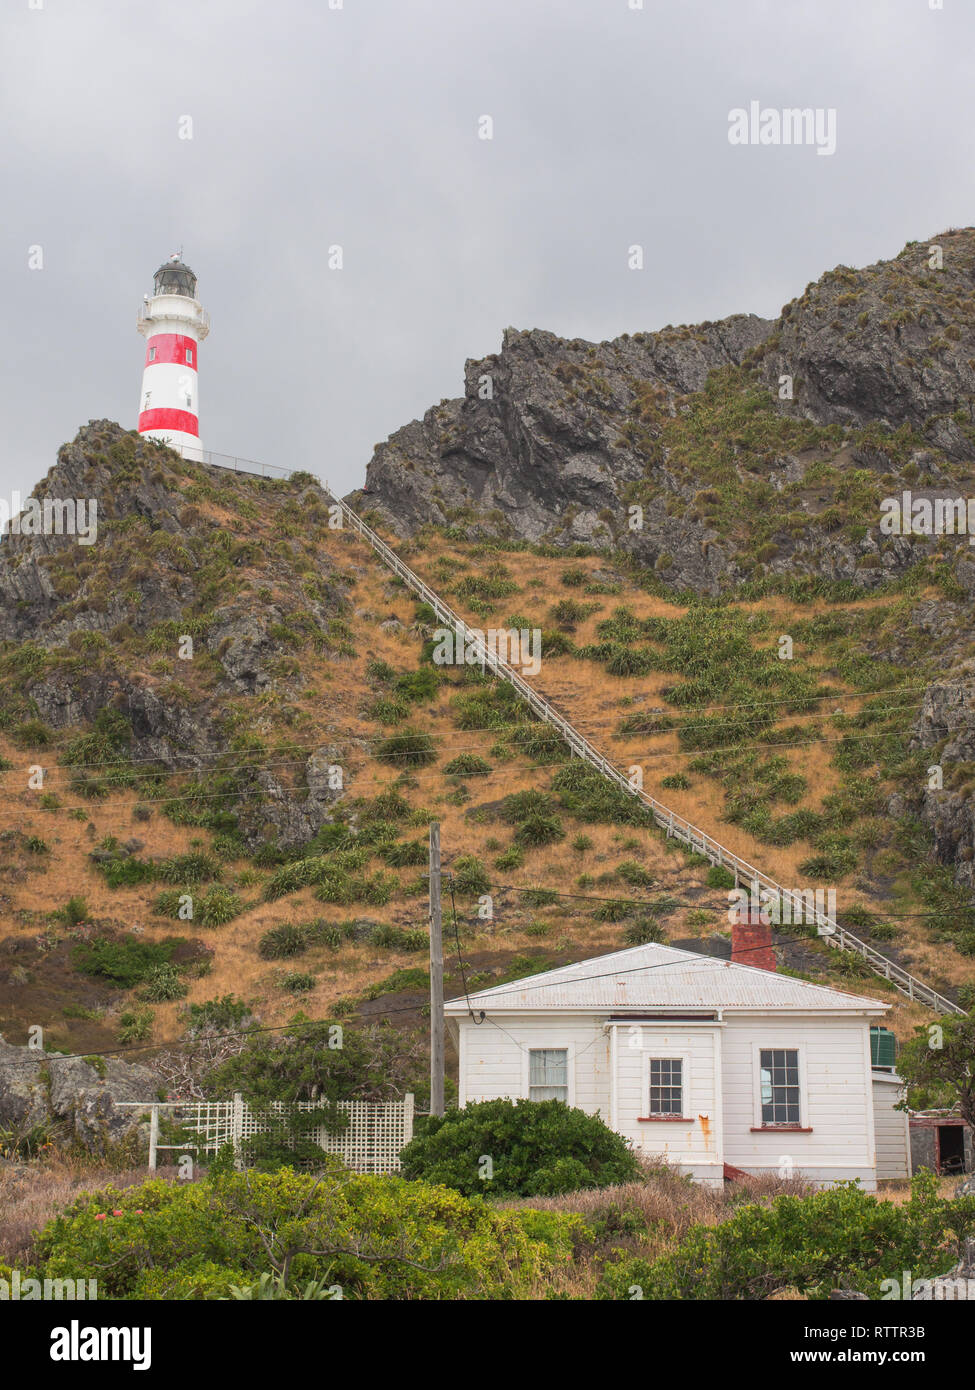 Cape Palliser lighthouse, lunga fila di passi dalla fanalisti house, paesaggio roccioso, Palliser Bay, Wairarapa, Nuova Zelanda Foto Stock